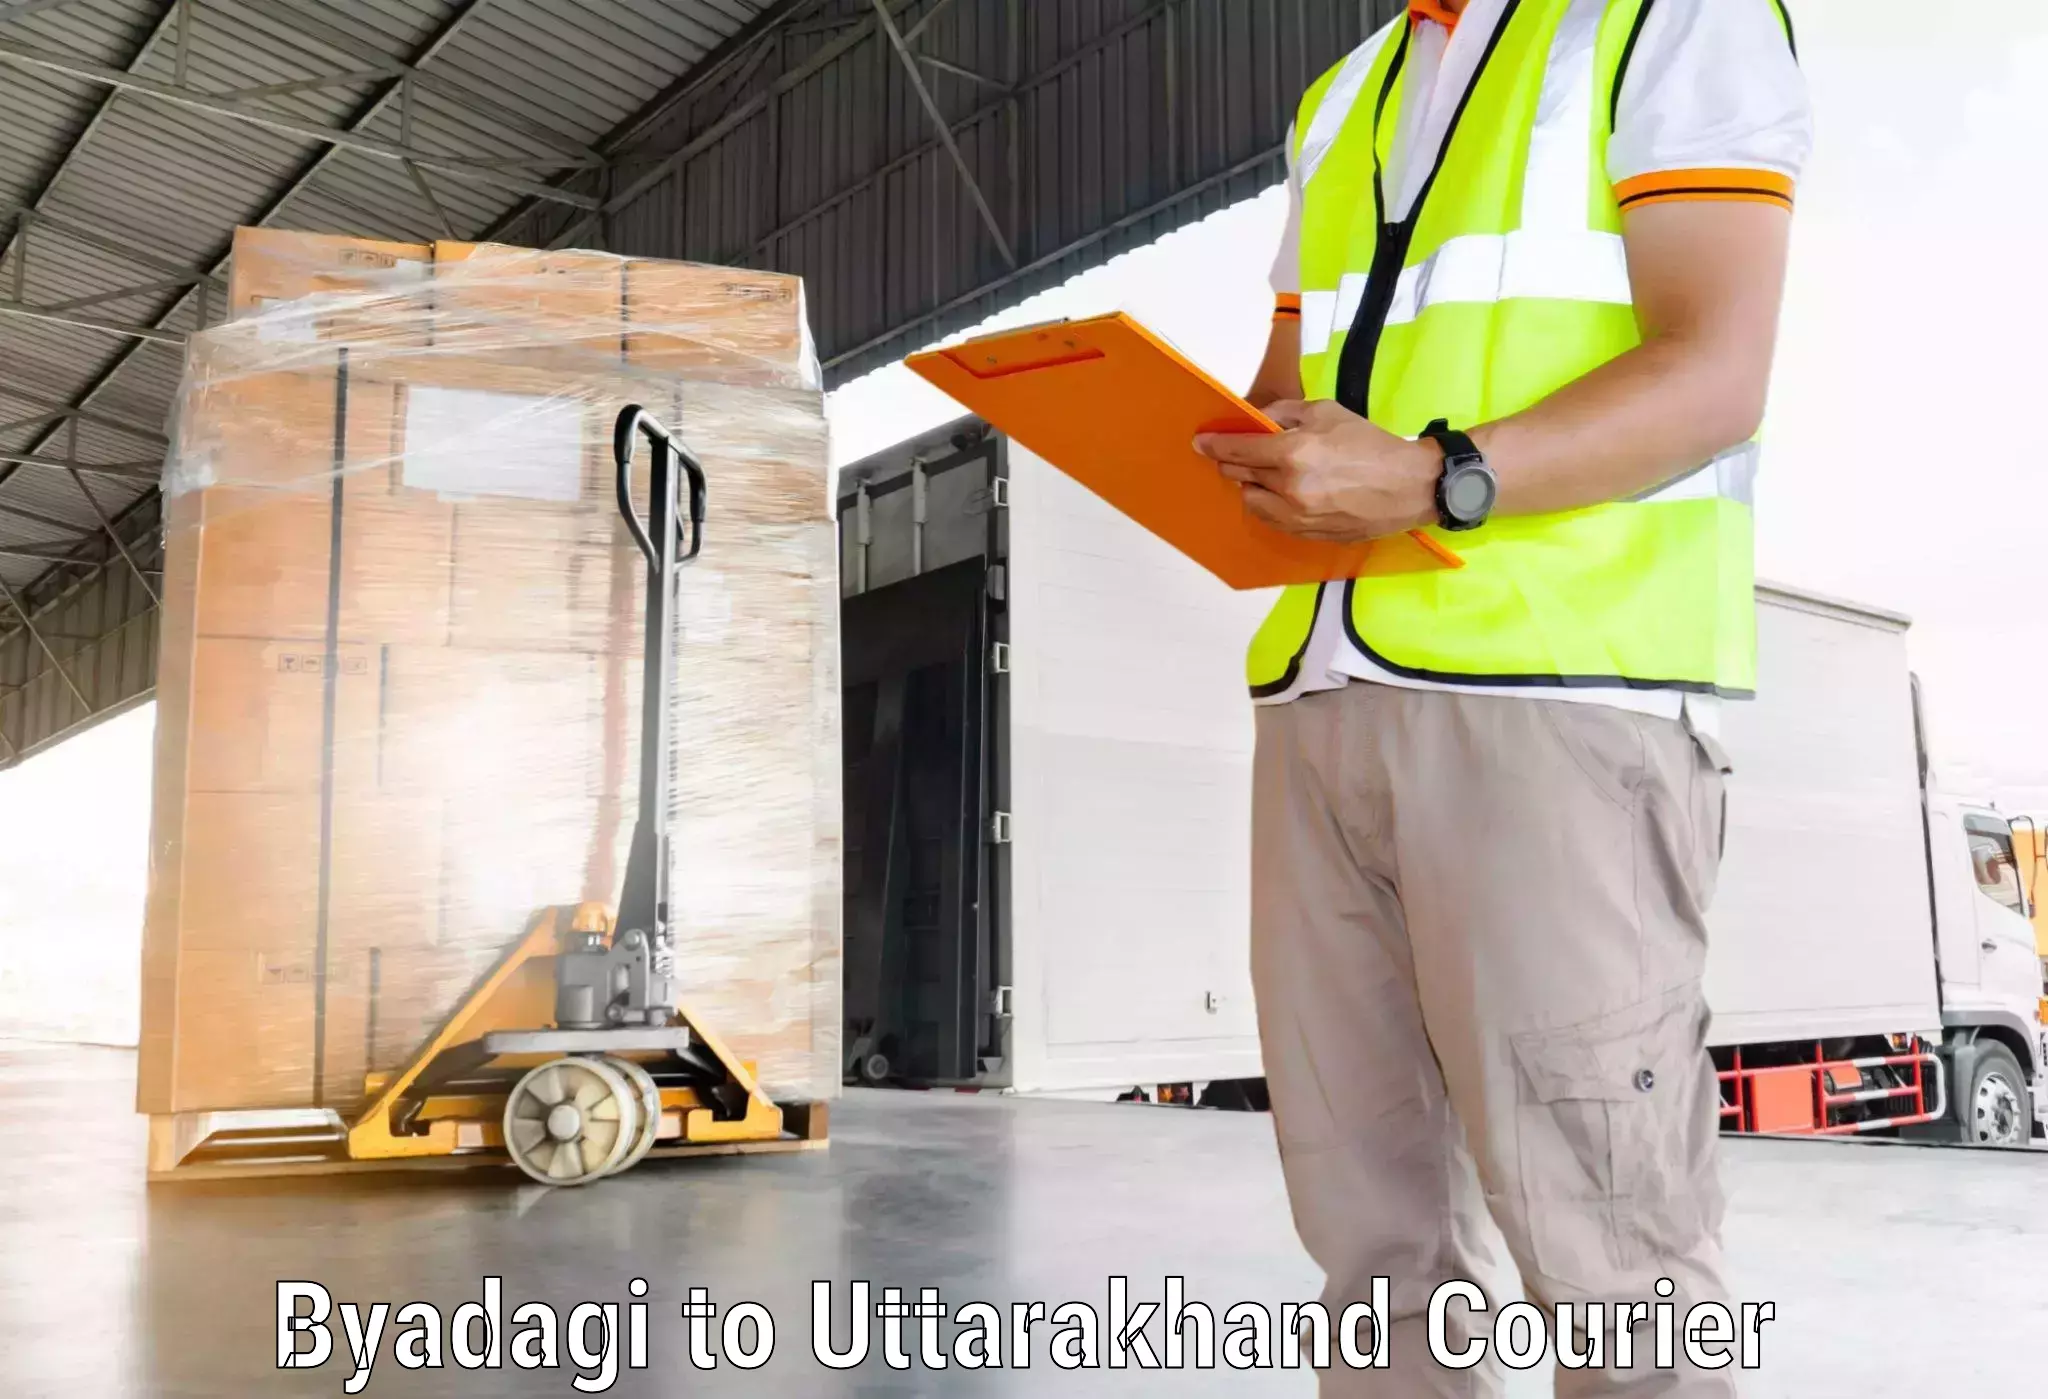 Global logistics network Byadagi to Bhagwanpur